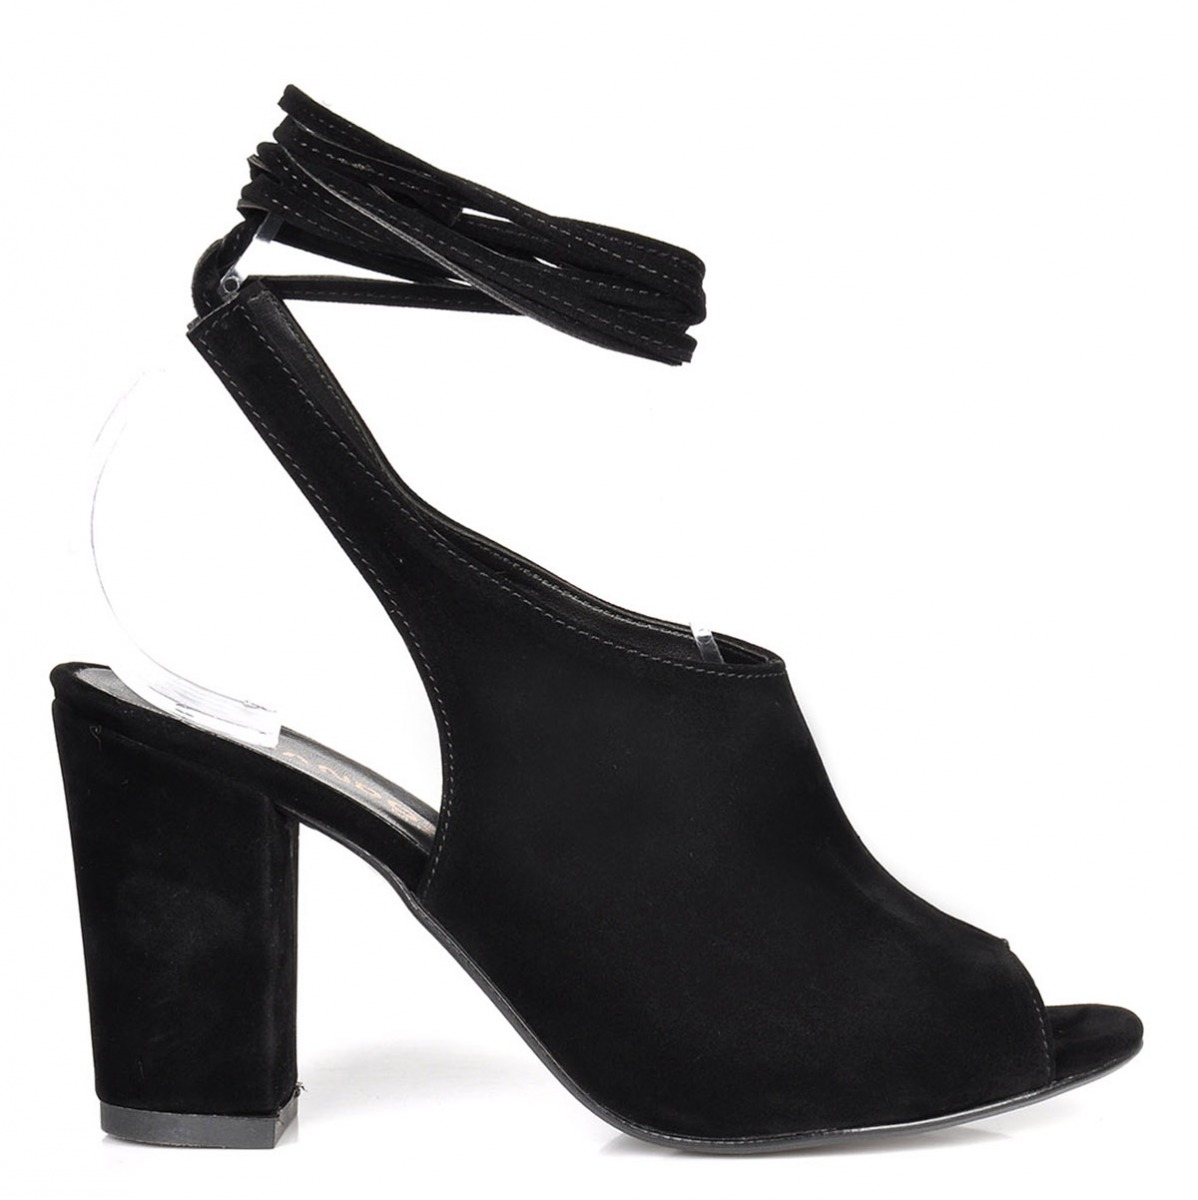 Flo Kadın  Siyah-Süet Klasik Topuklu Ayakkabı VZN-273Y. 1